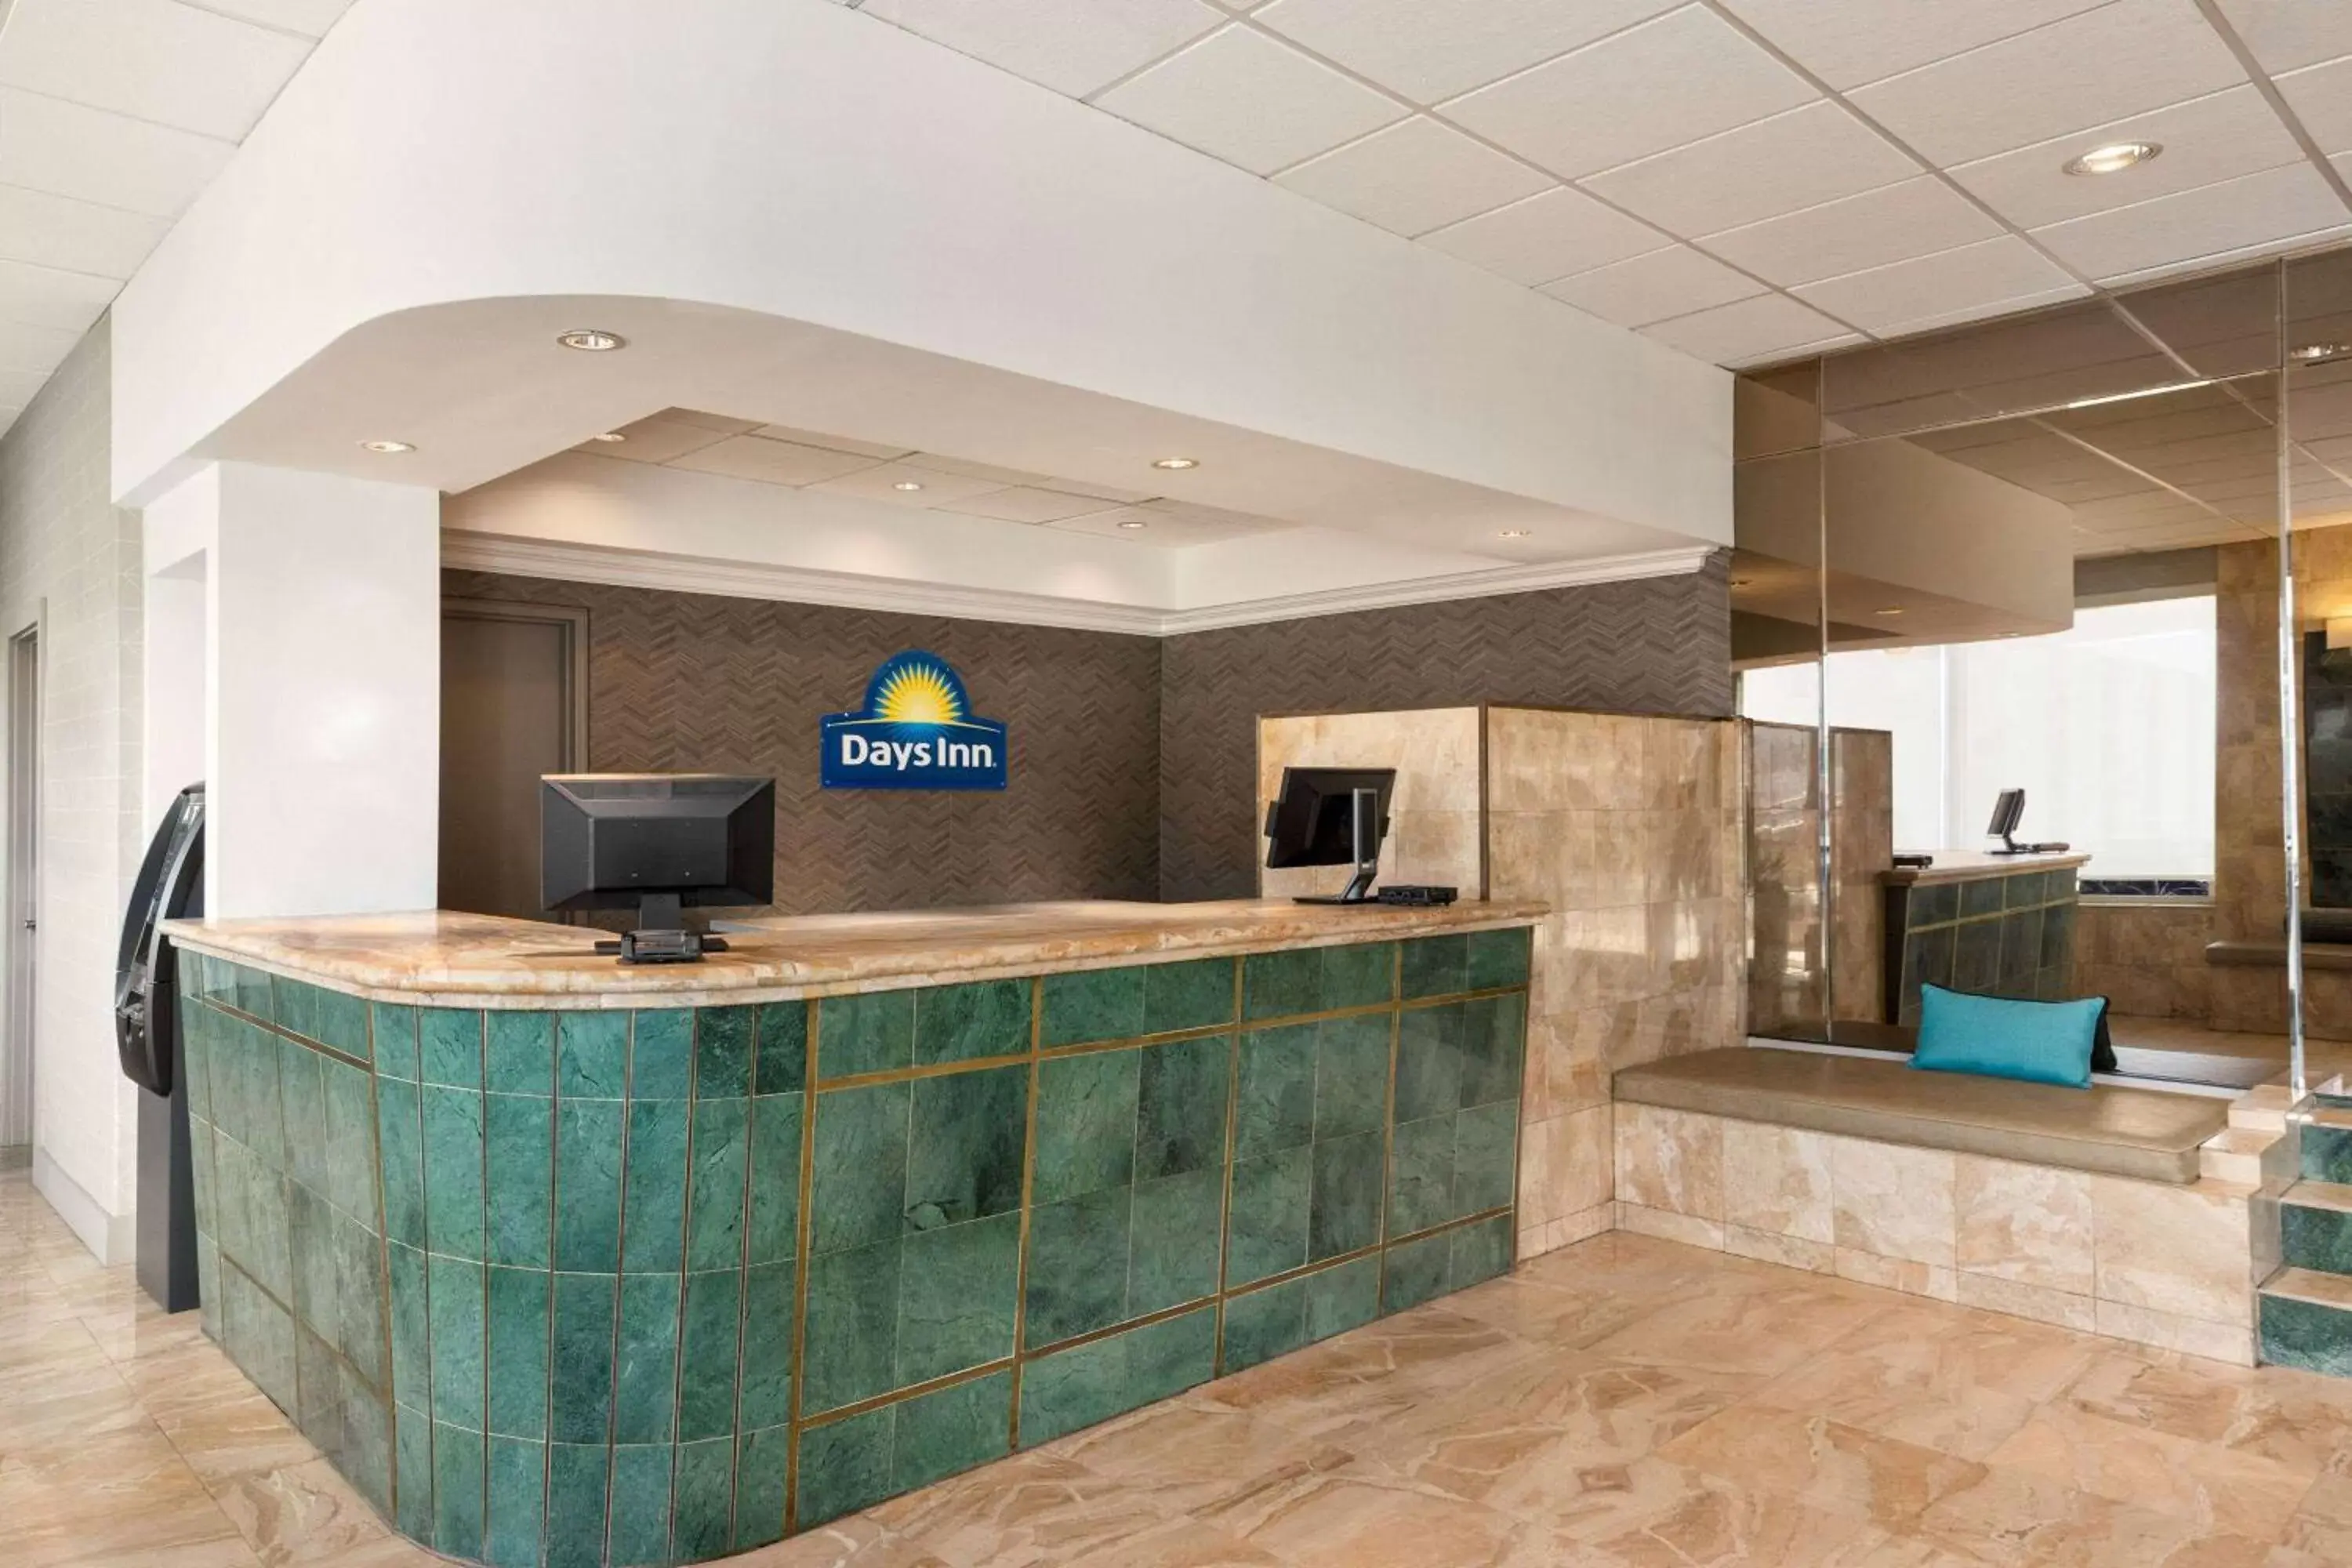 Lobby or reception, Lobby/Reception in Days Inn by Wyndham Miami Airport North